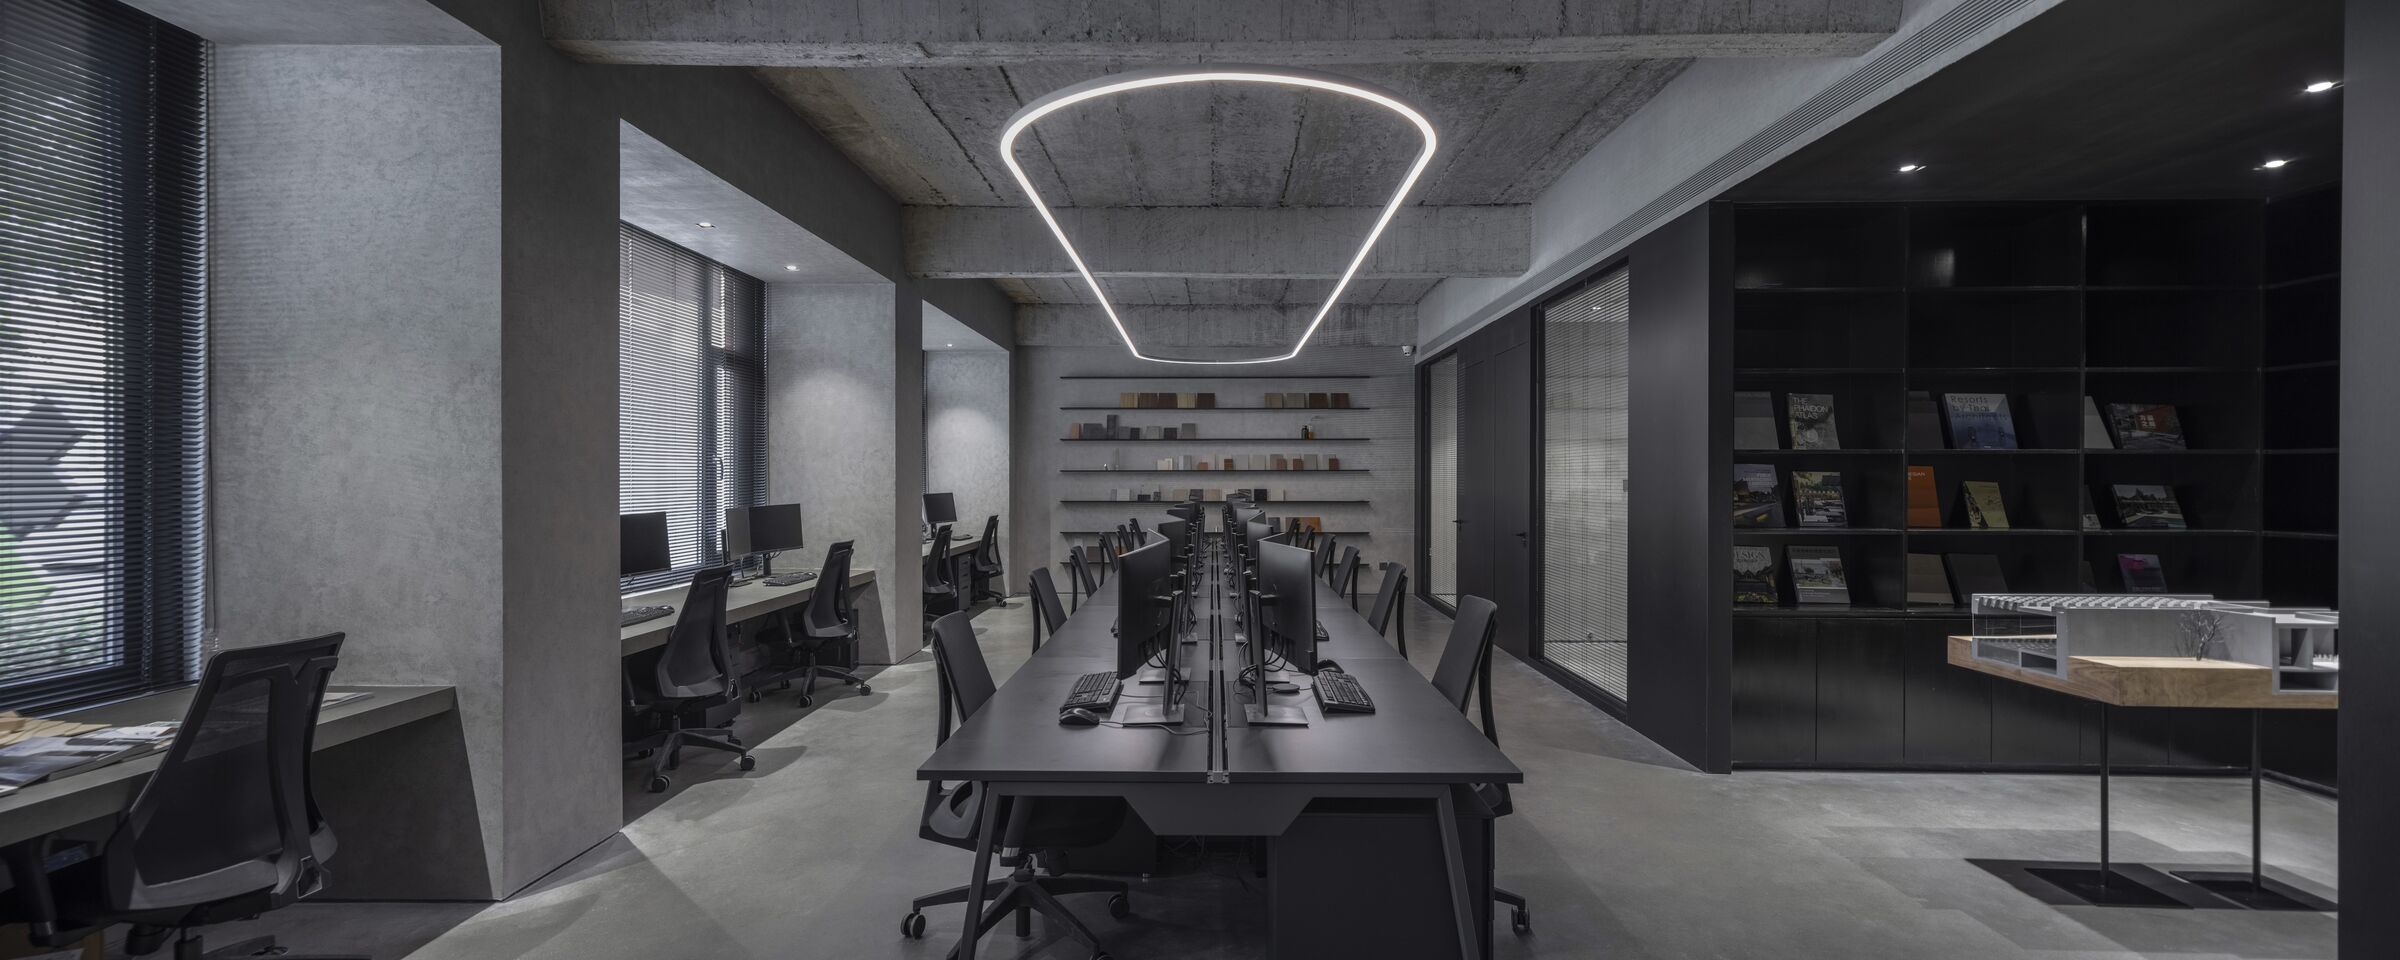 Thiết kế nội thất văn phòng đẹp theo phong cách công nghiệp - Industrial | Nguồn: Internet.